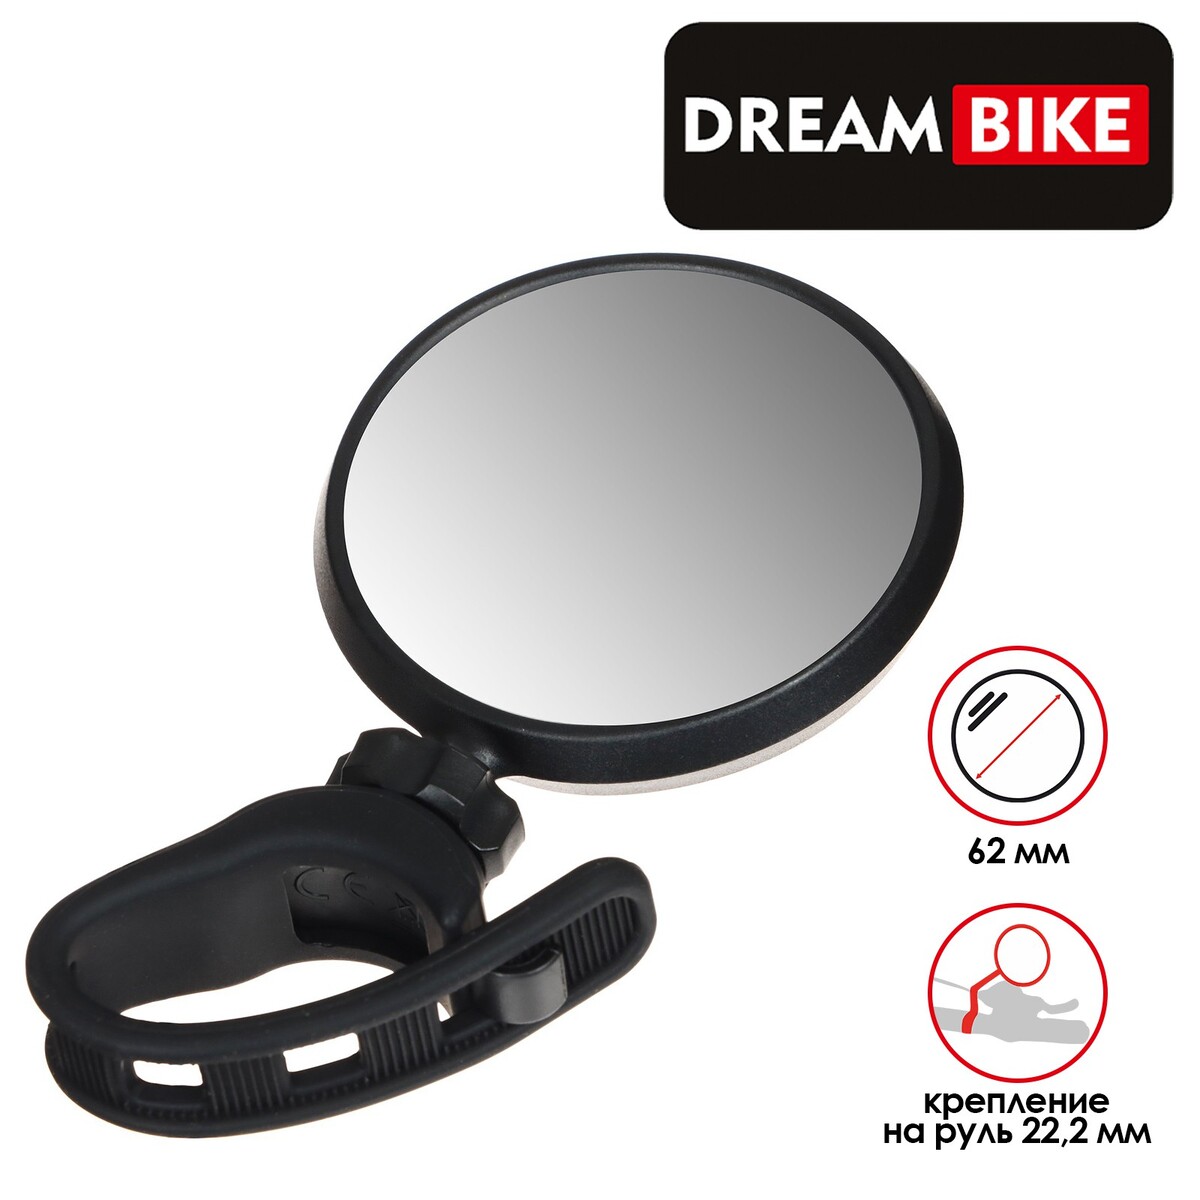 Зеркало заднего вида dream bike, jy-17, Dream Bike